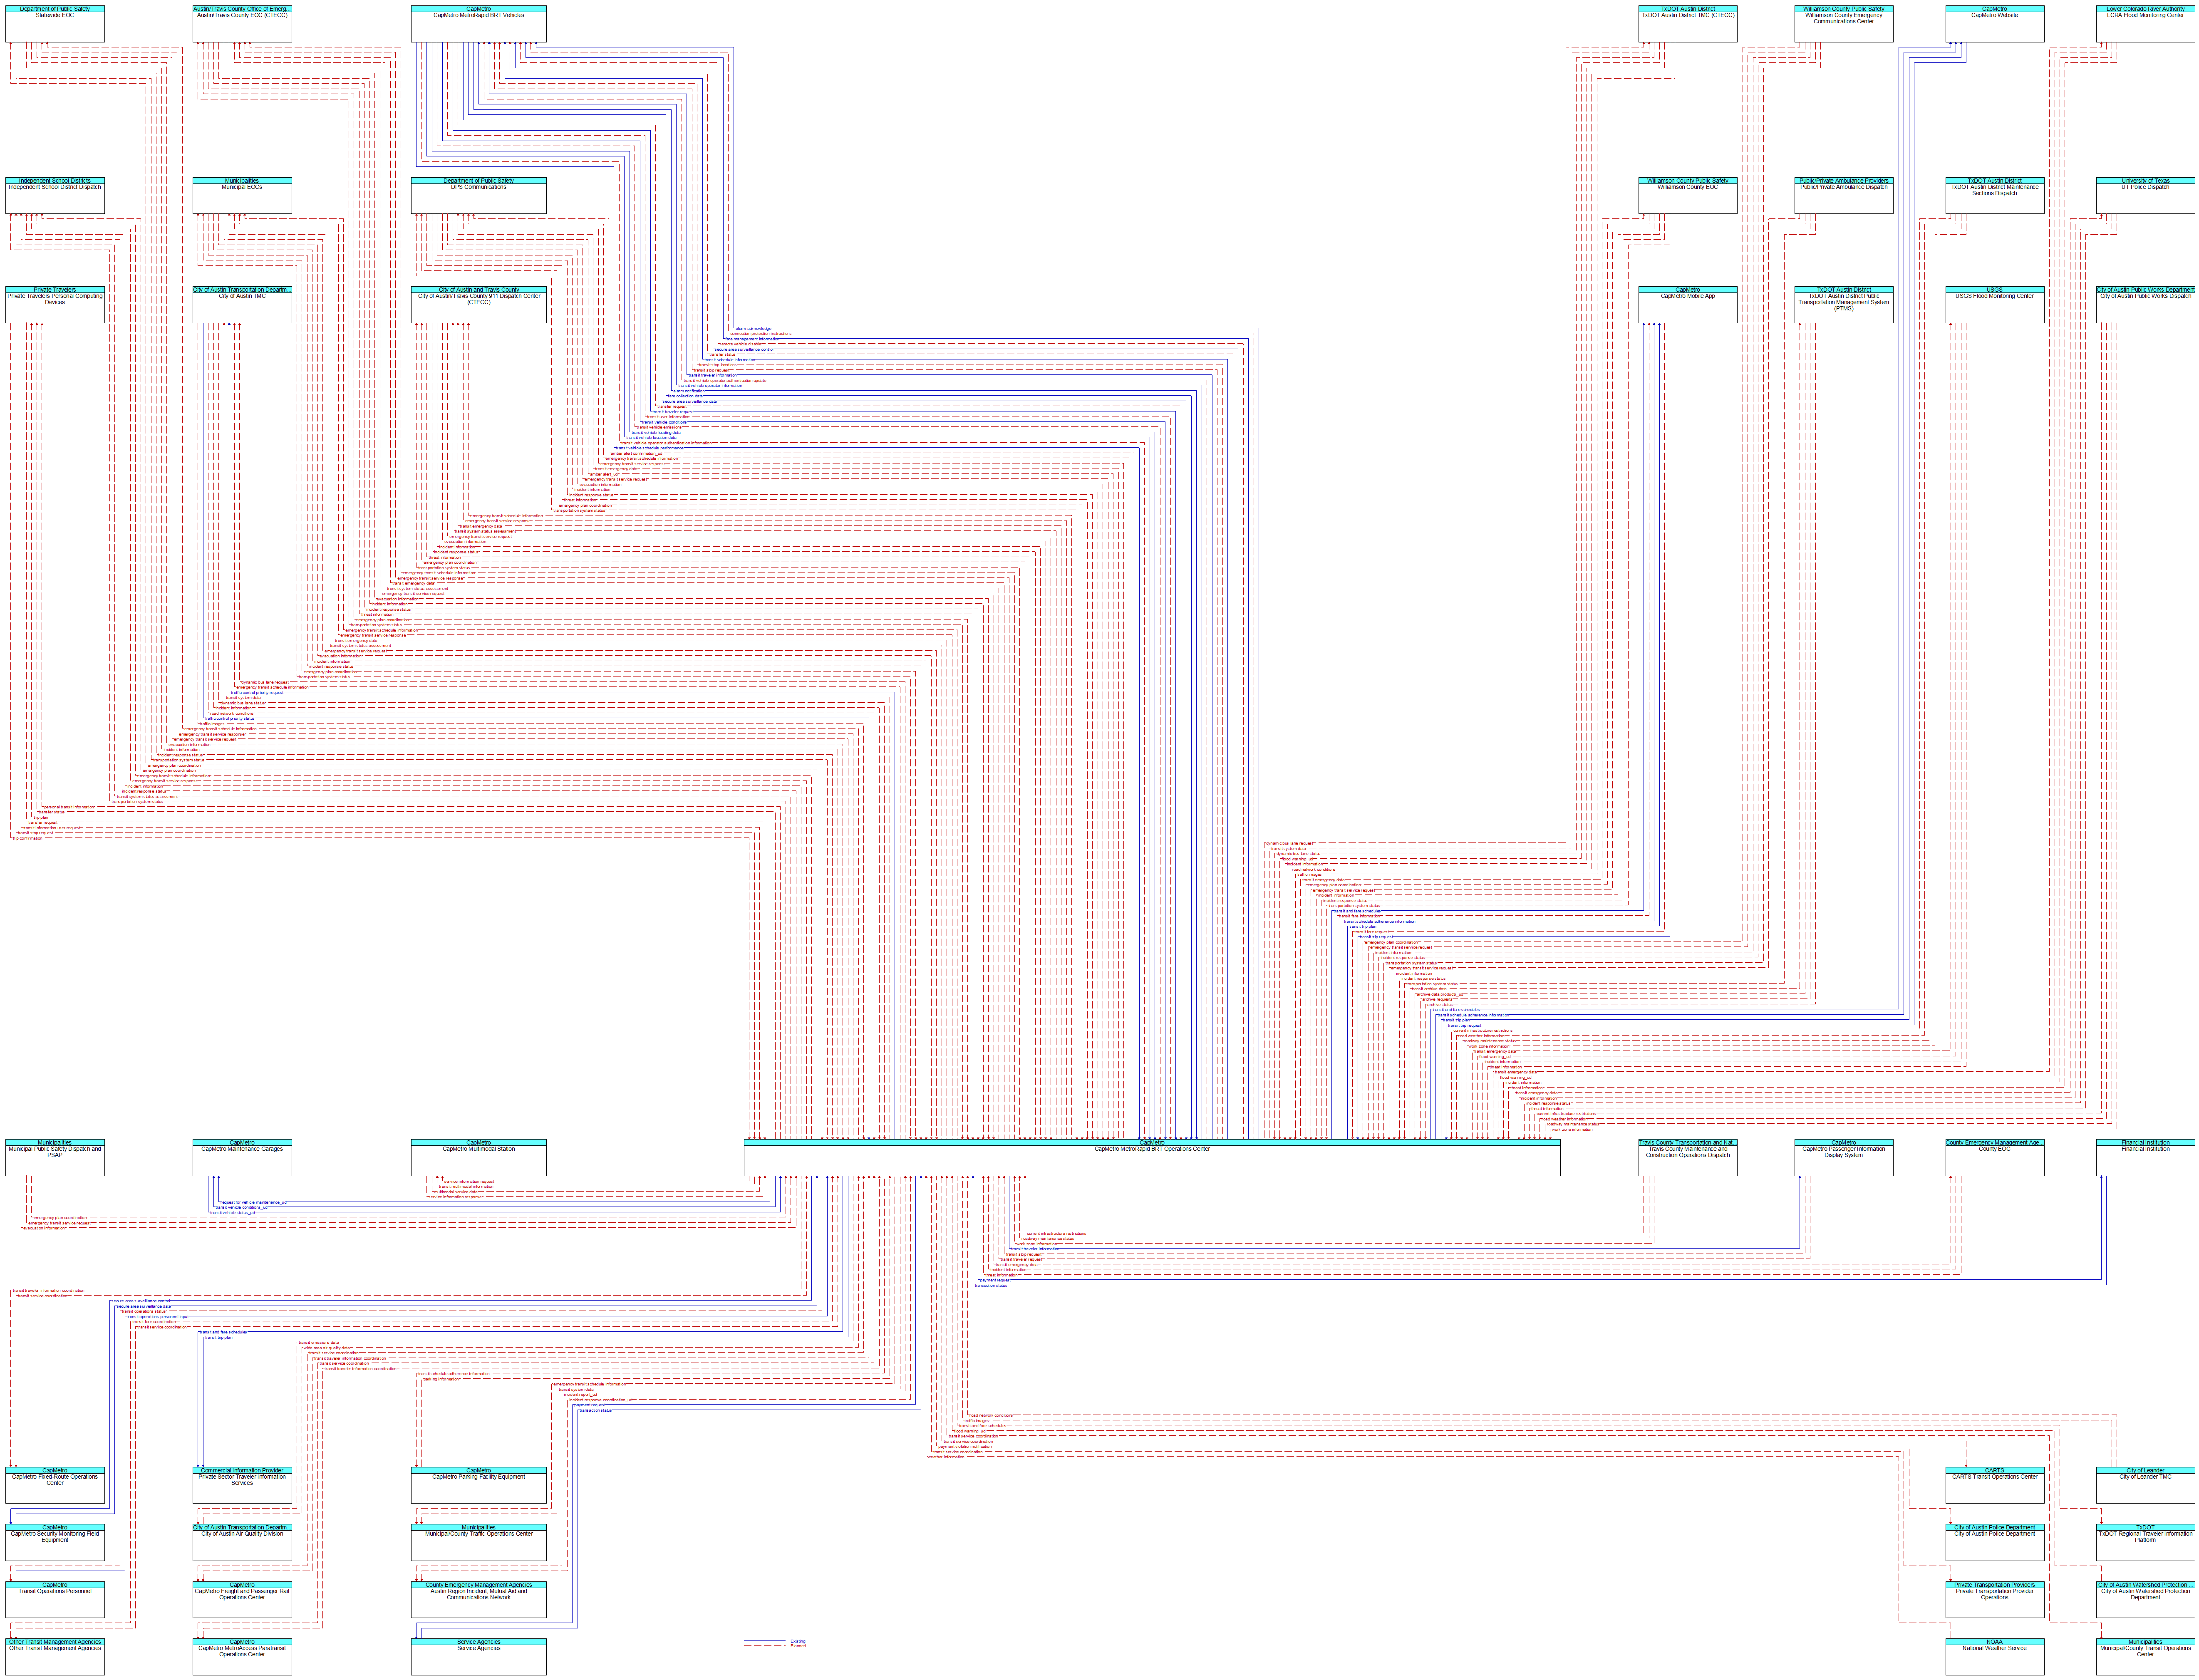 Context Diagram - CapMetro MetroRapid BRT Operations Center